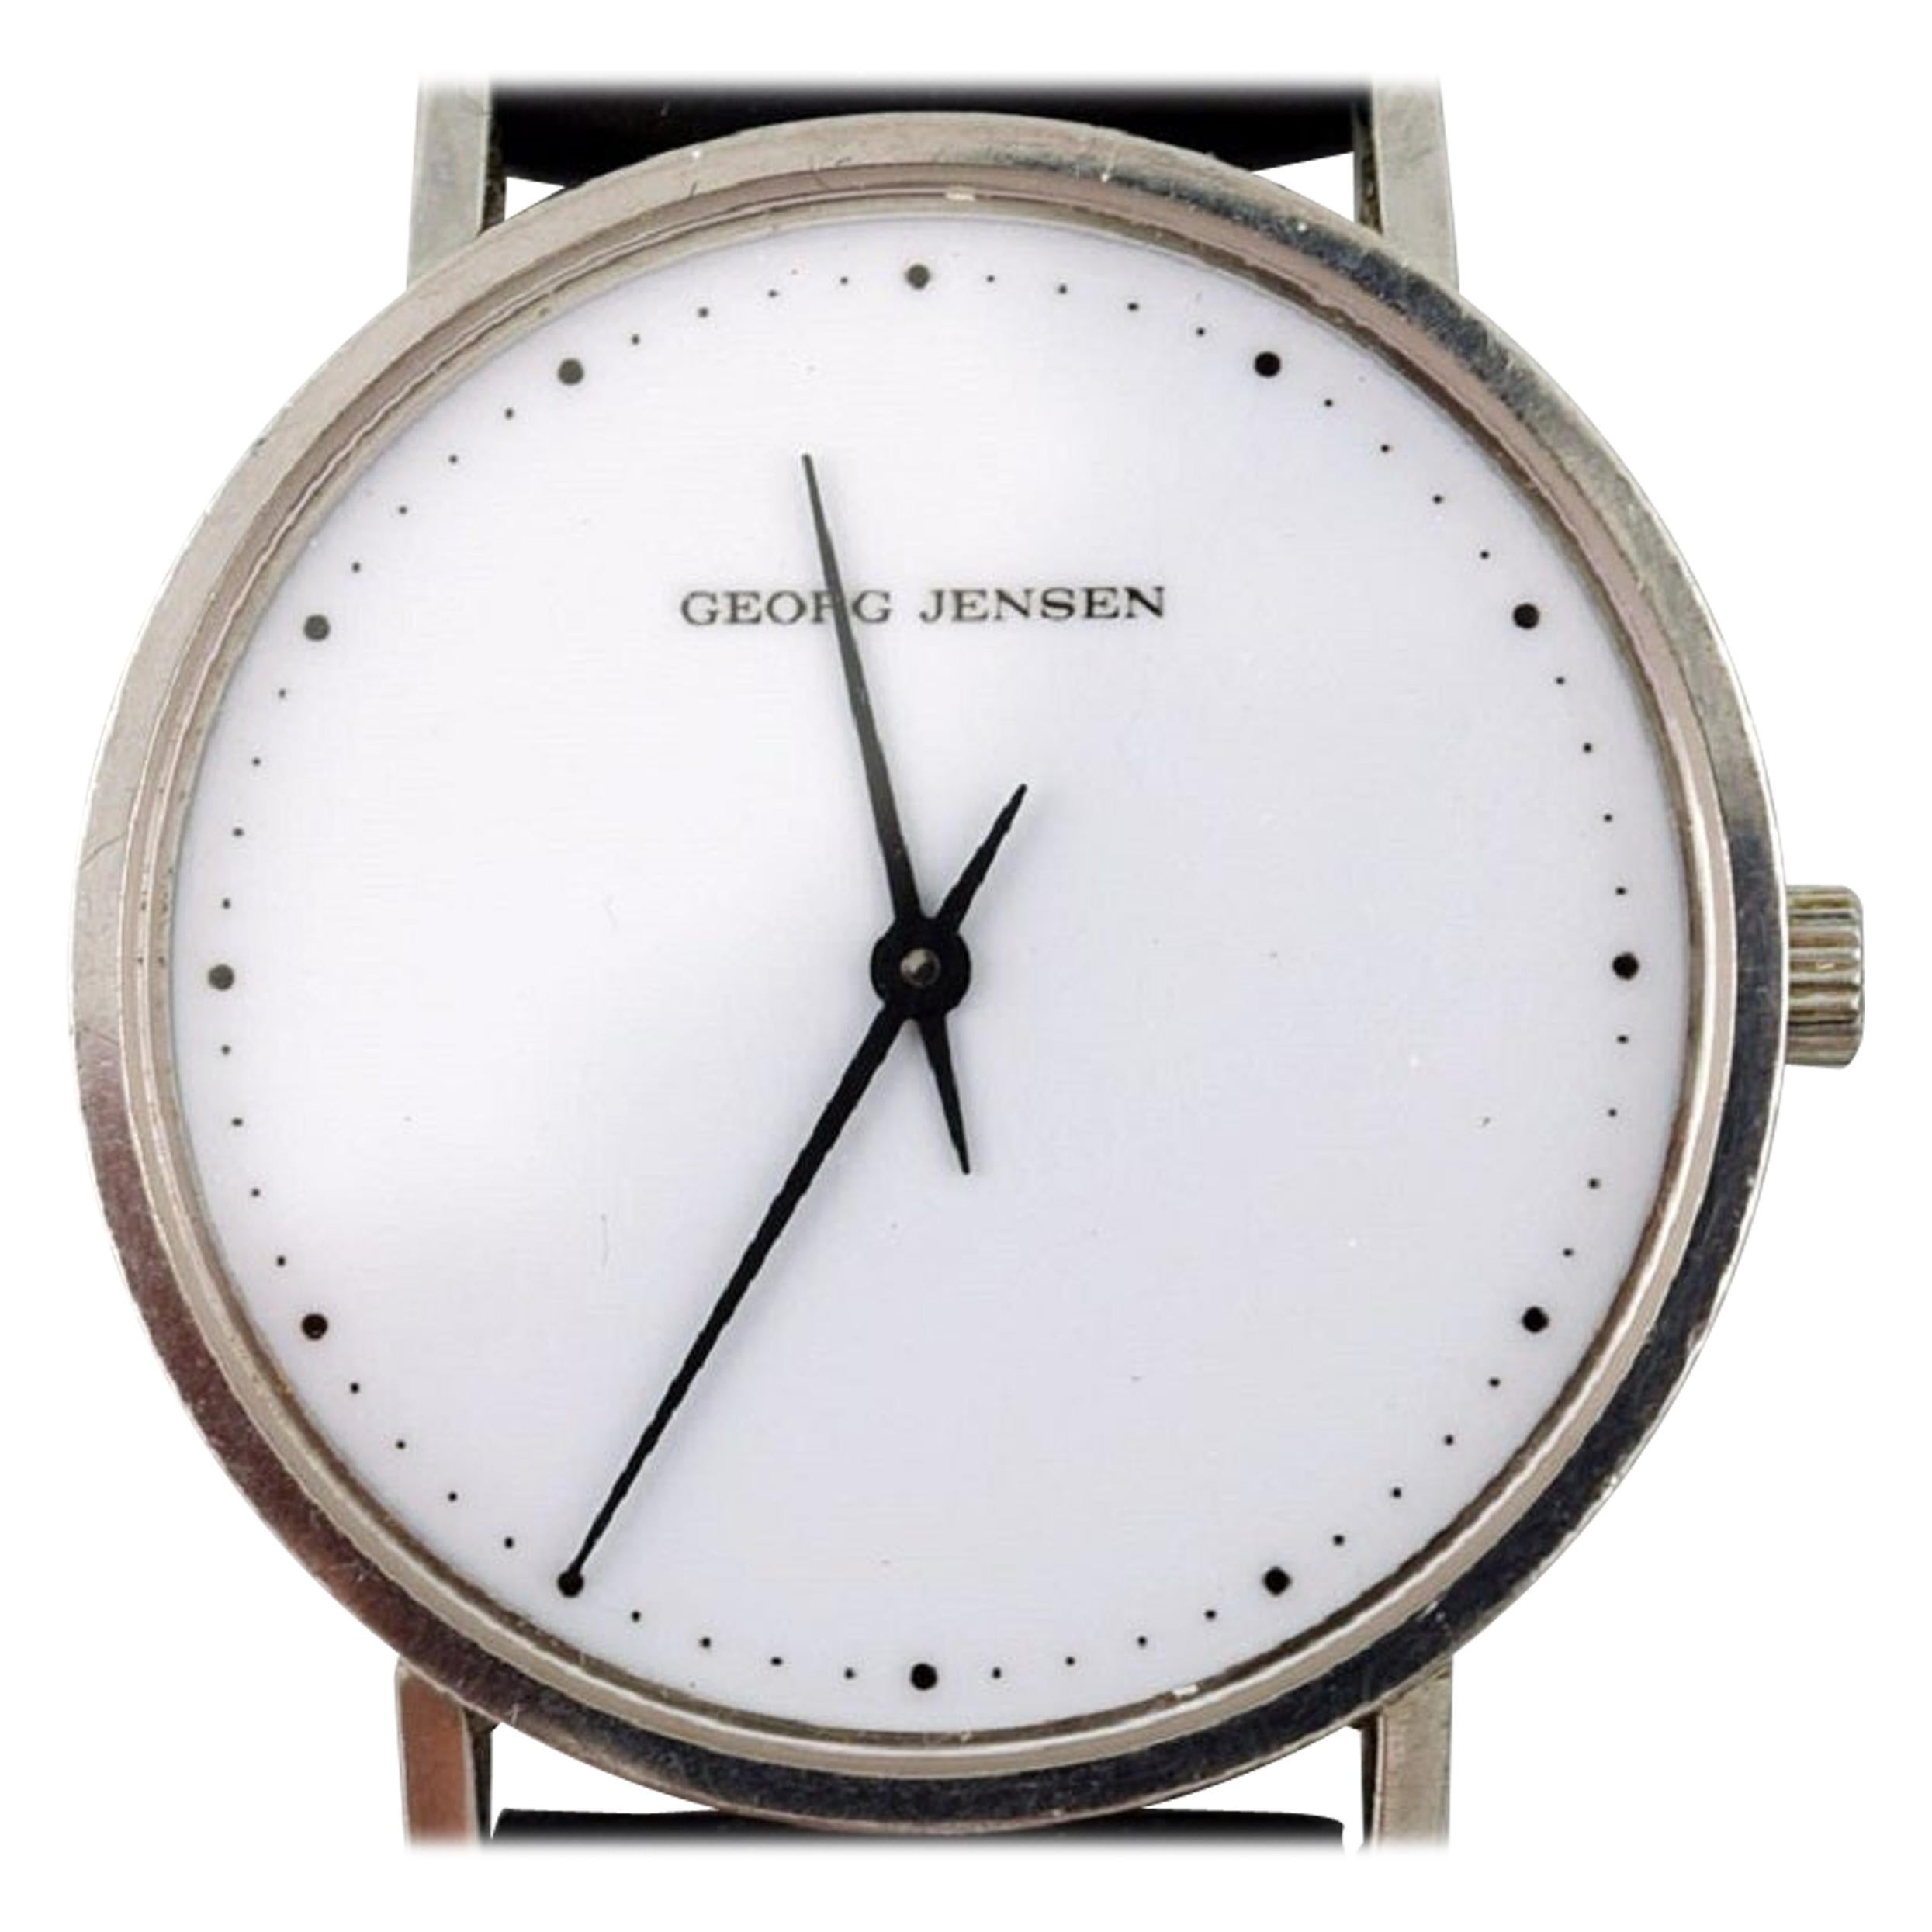 Henning Koppel Gentleman's Wristwatch of Steel, Manufactured by Georg Jensen